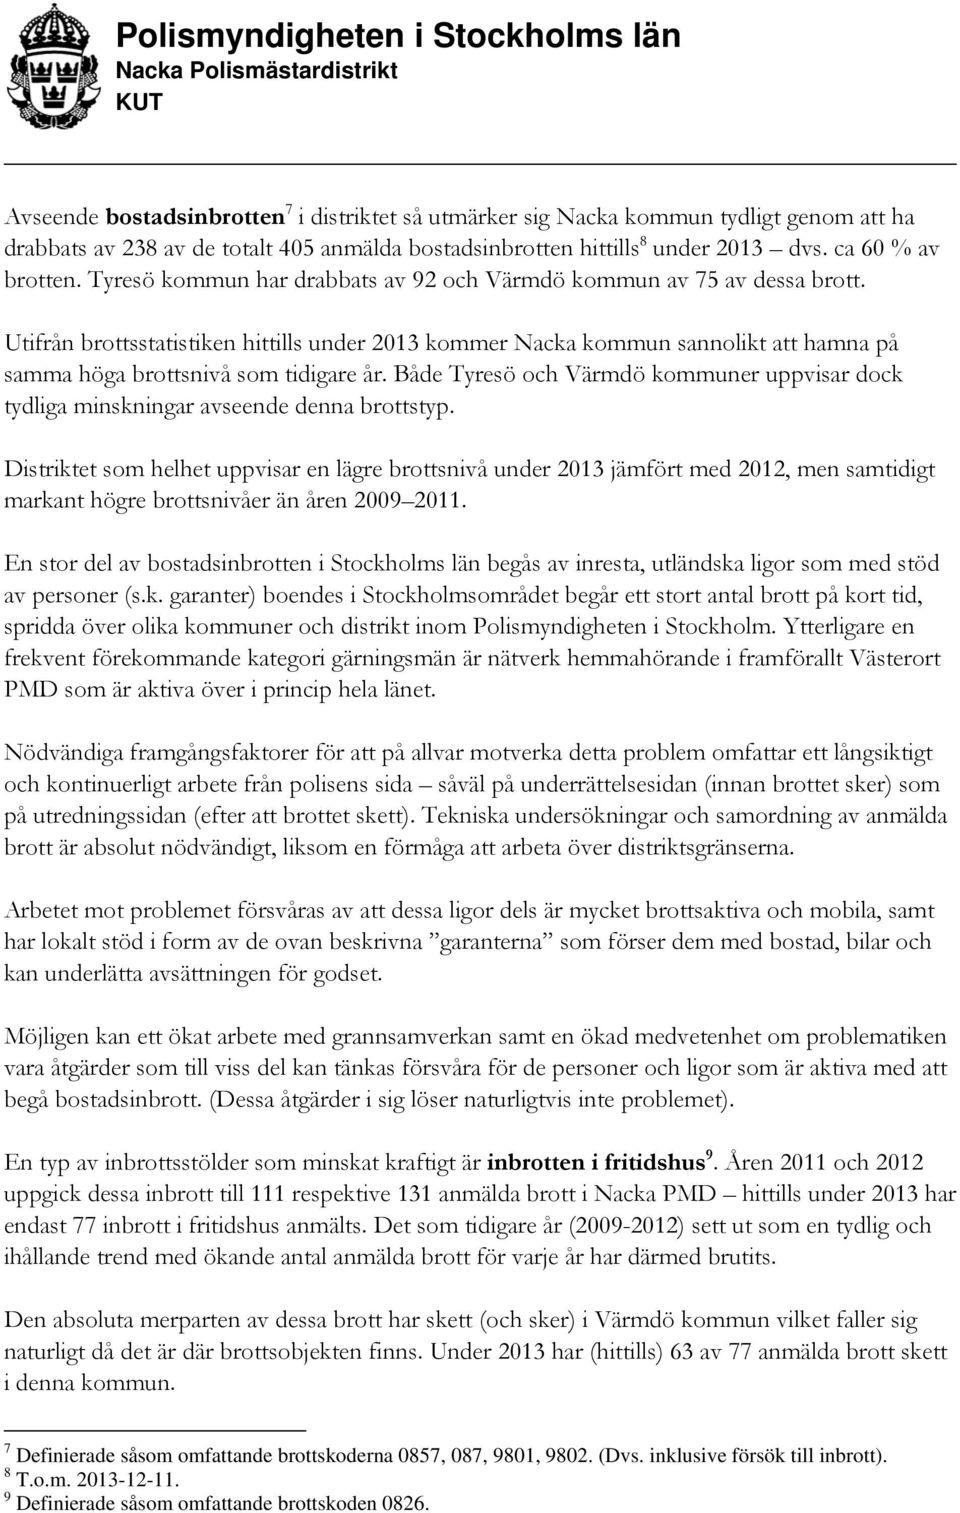 Både Tyresö och Värmdö kommuner uppvisar dock tydliga minskningar avseende denna brottstyp.